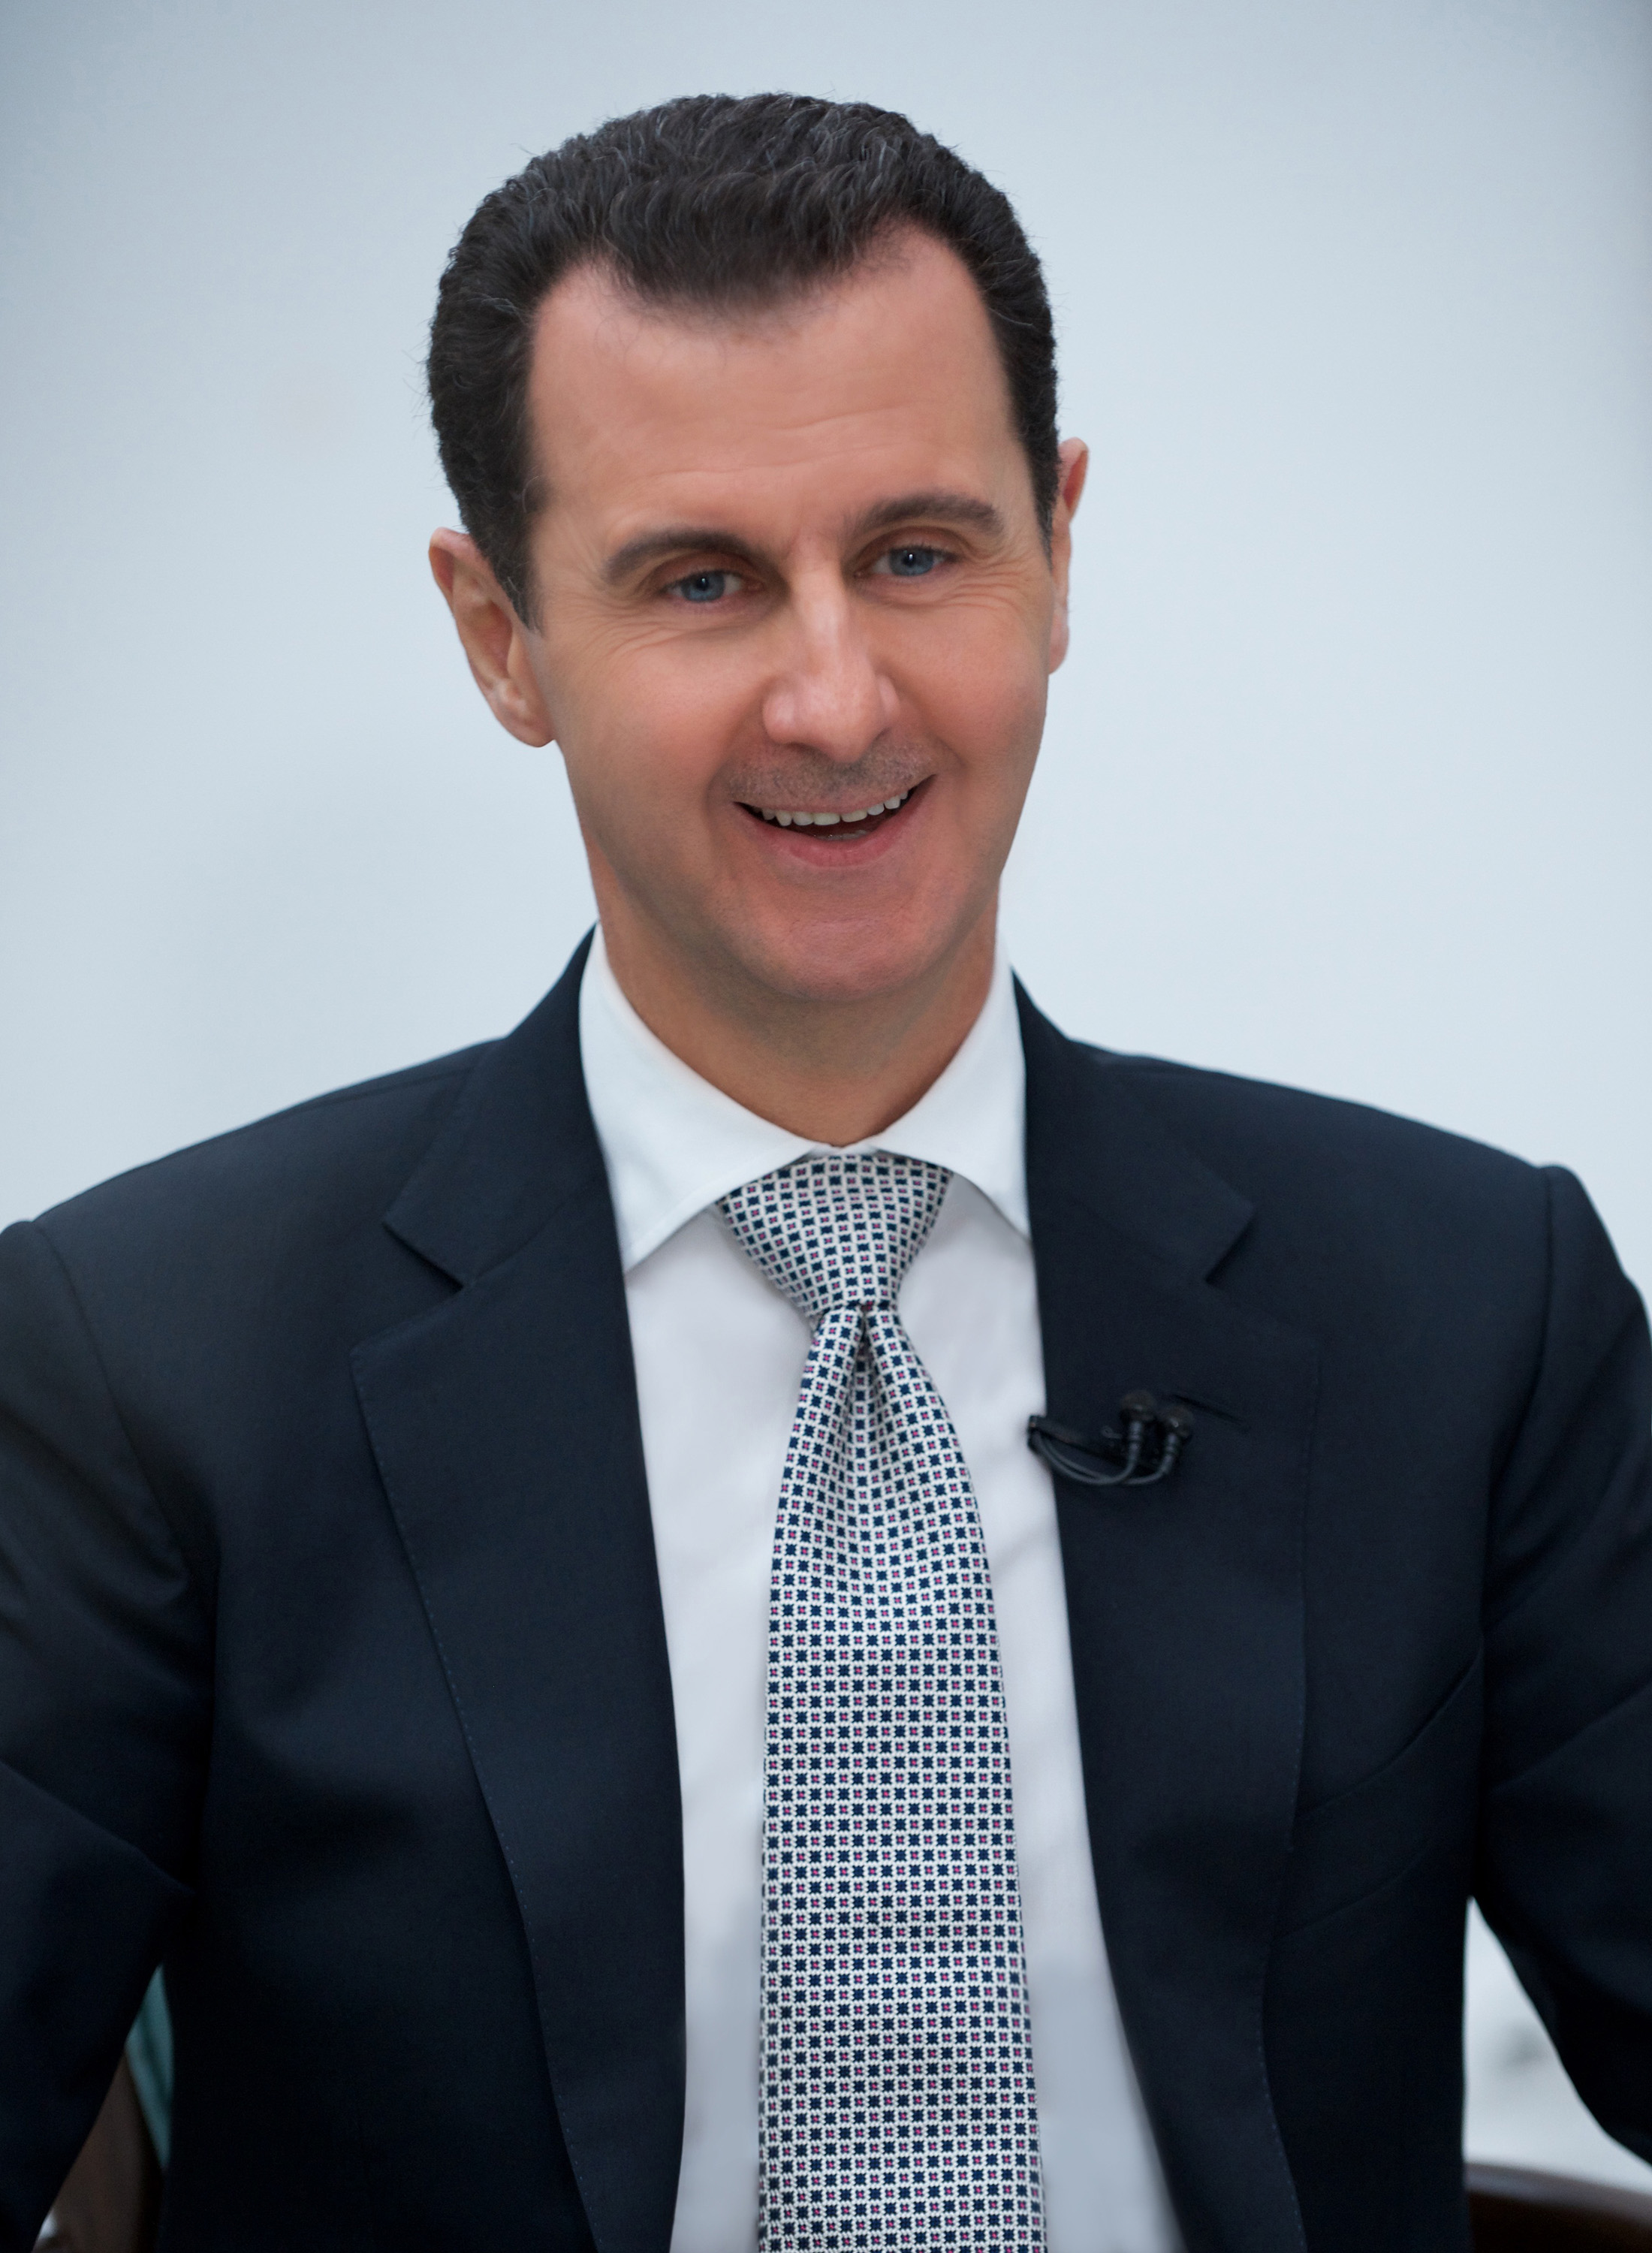 الرئيس السورى بشار الأسد